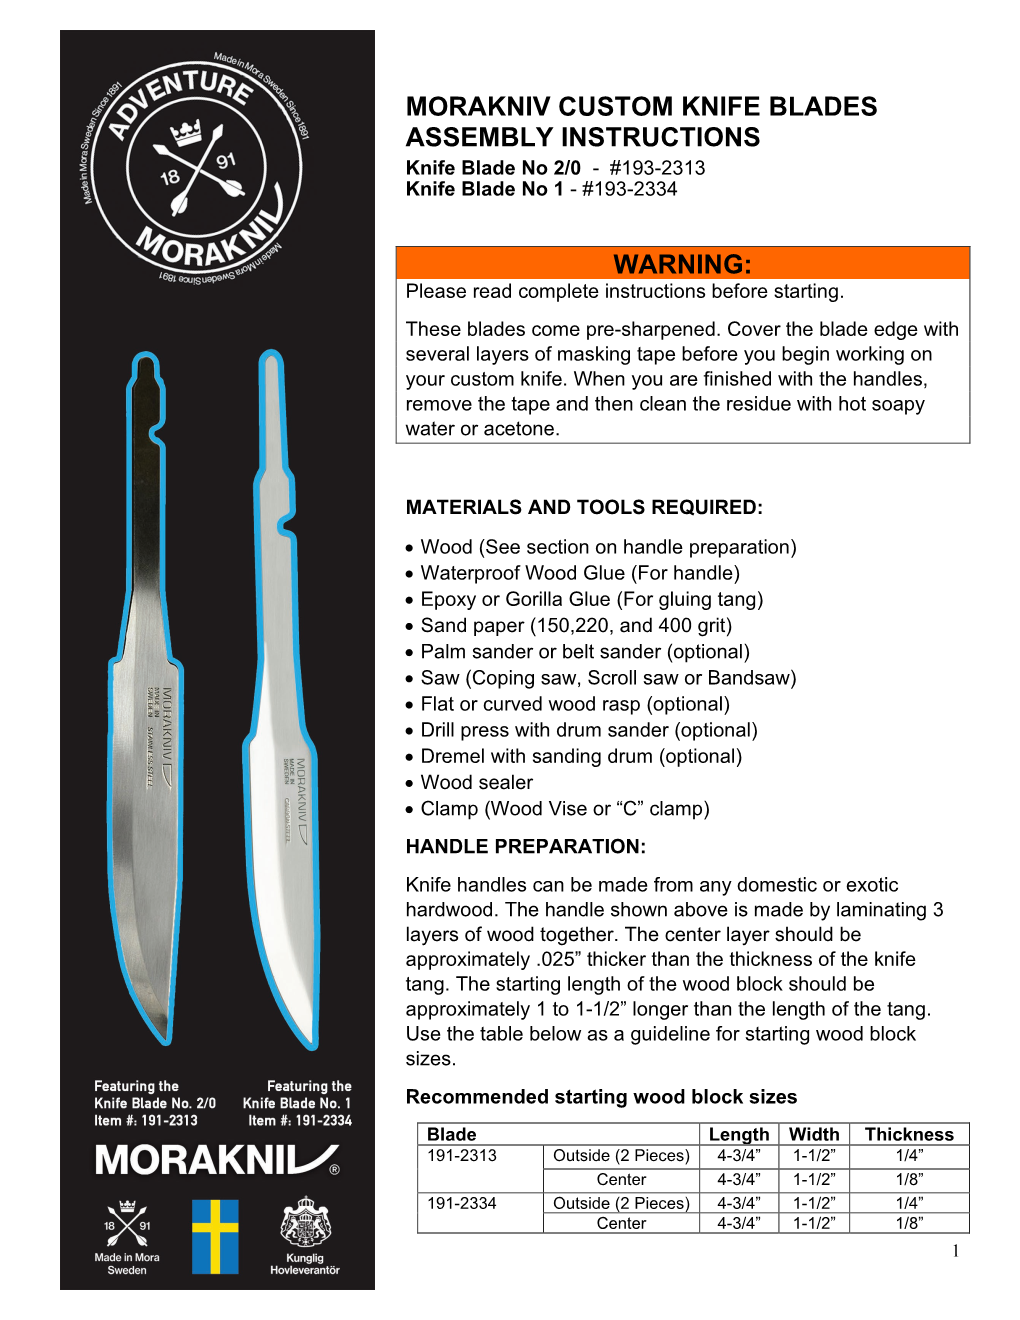 Morakniv Custom Knife Blades Assembly Instructions Warning